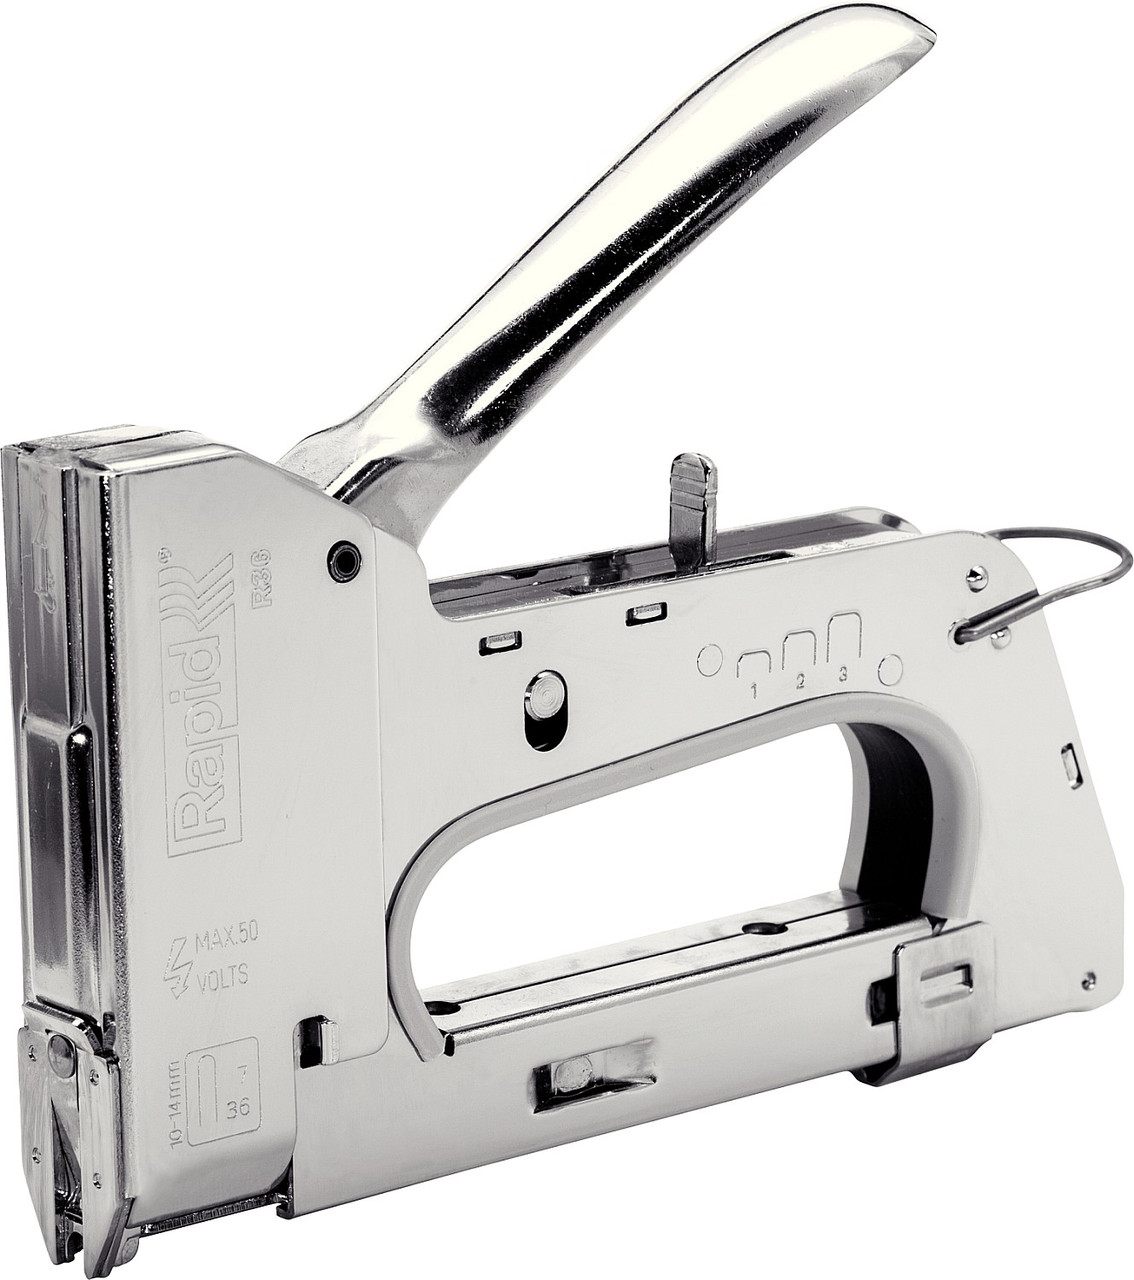 RAPID R36E степлер (скобозабиватель) ручной для кабеля 6 мм, тип 36 (10-14 мм). Cтальной корпус. Легкое, фото 1